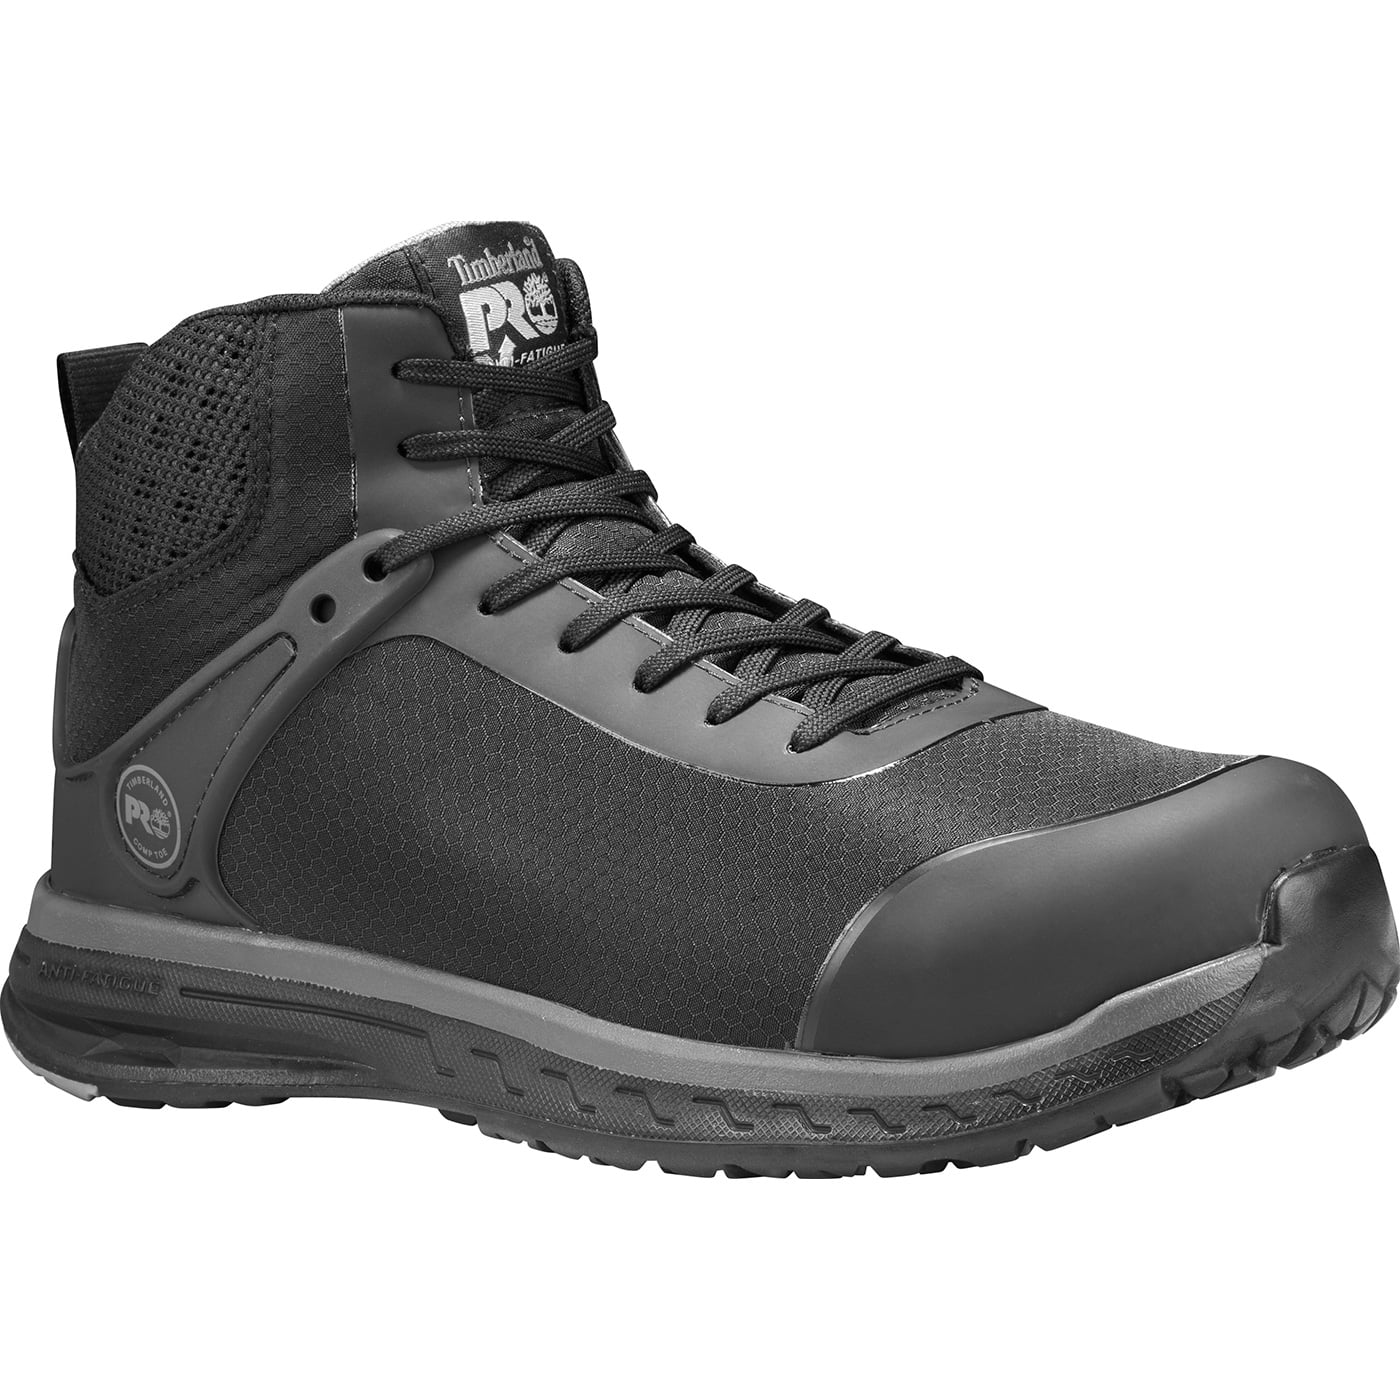 Shoes for Crews Men's Bronco Composite Toe Waterproof New in Box Men's